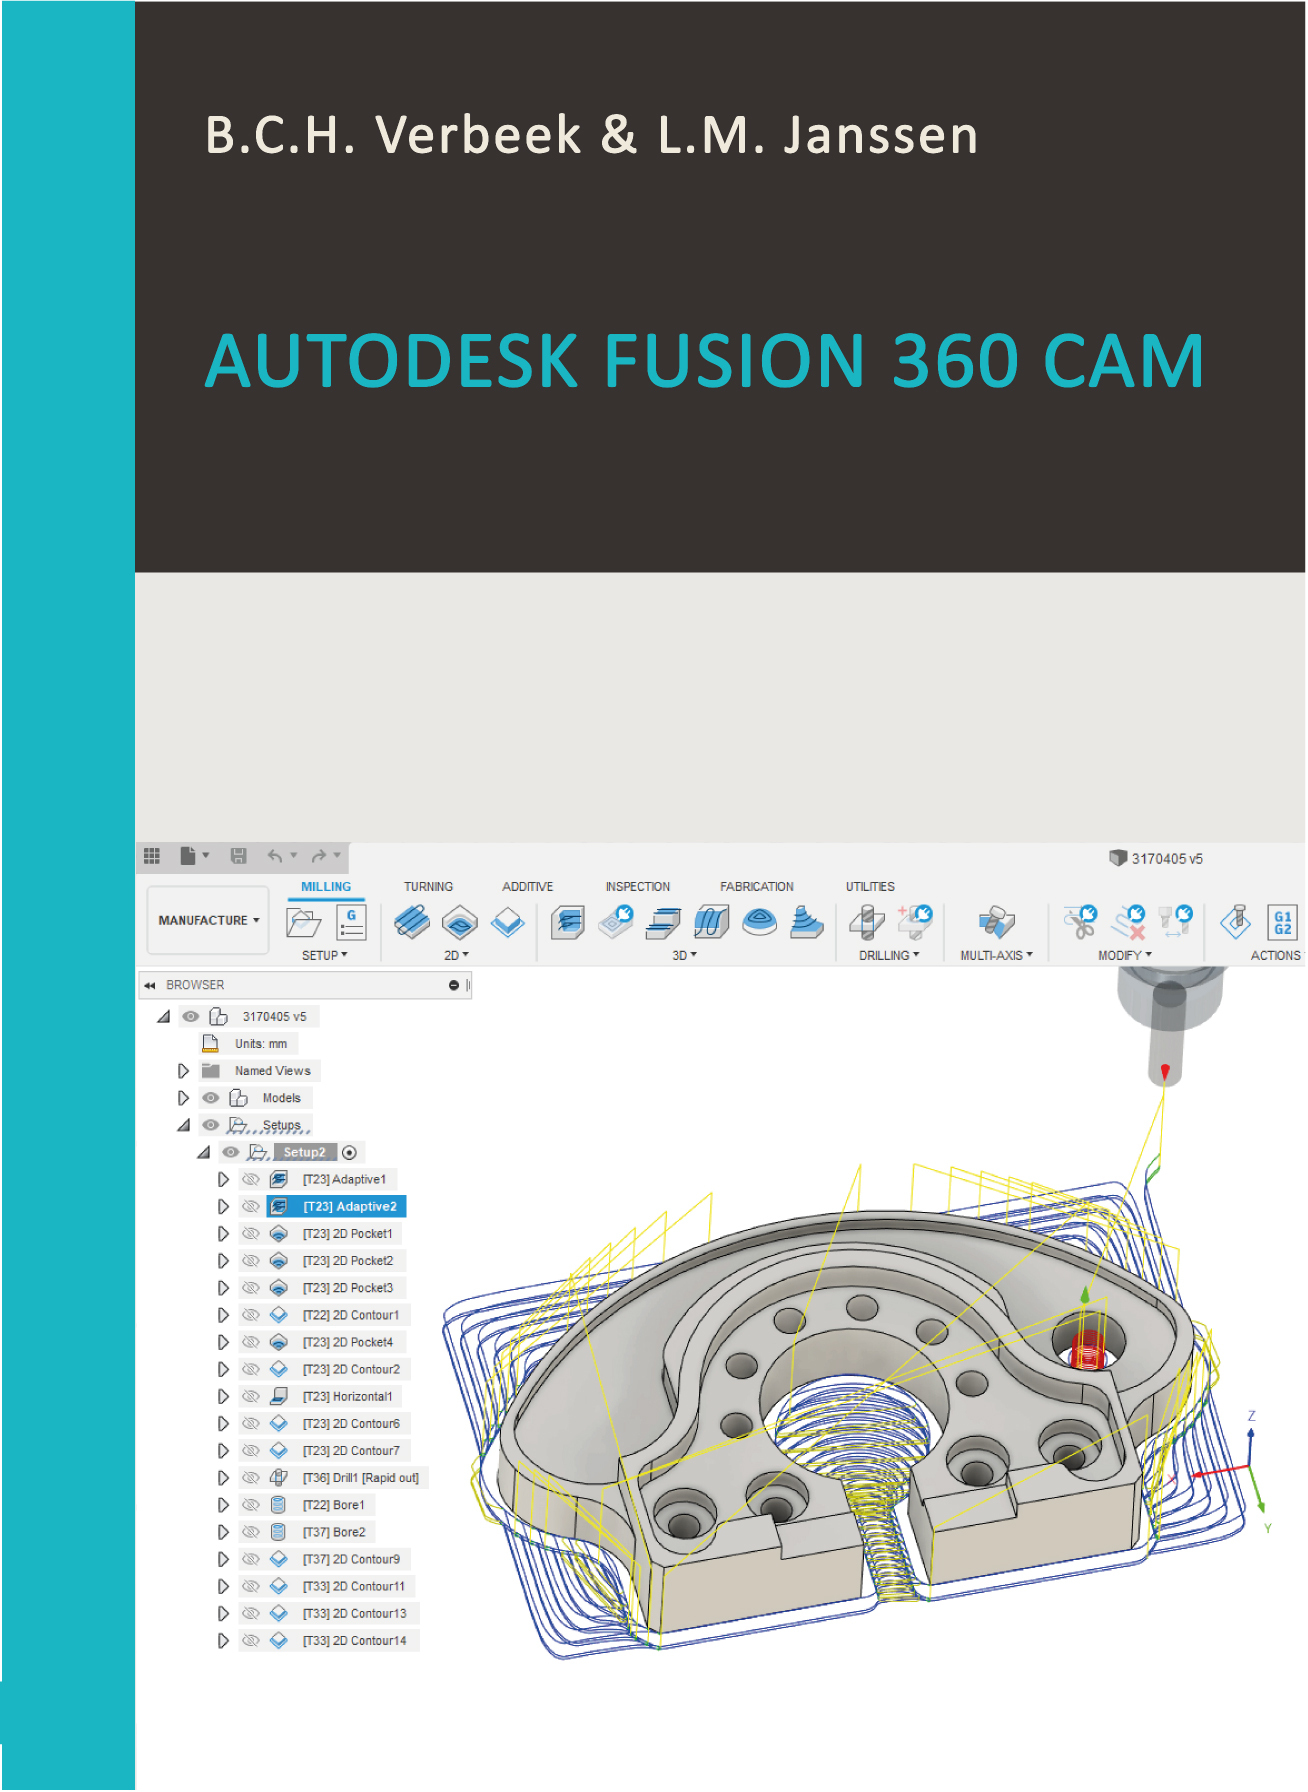 Fusion360 Cam